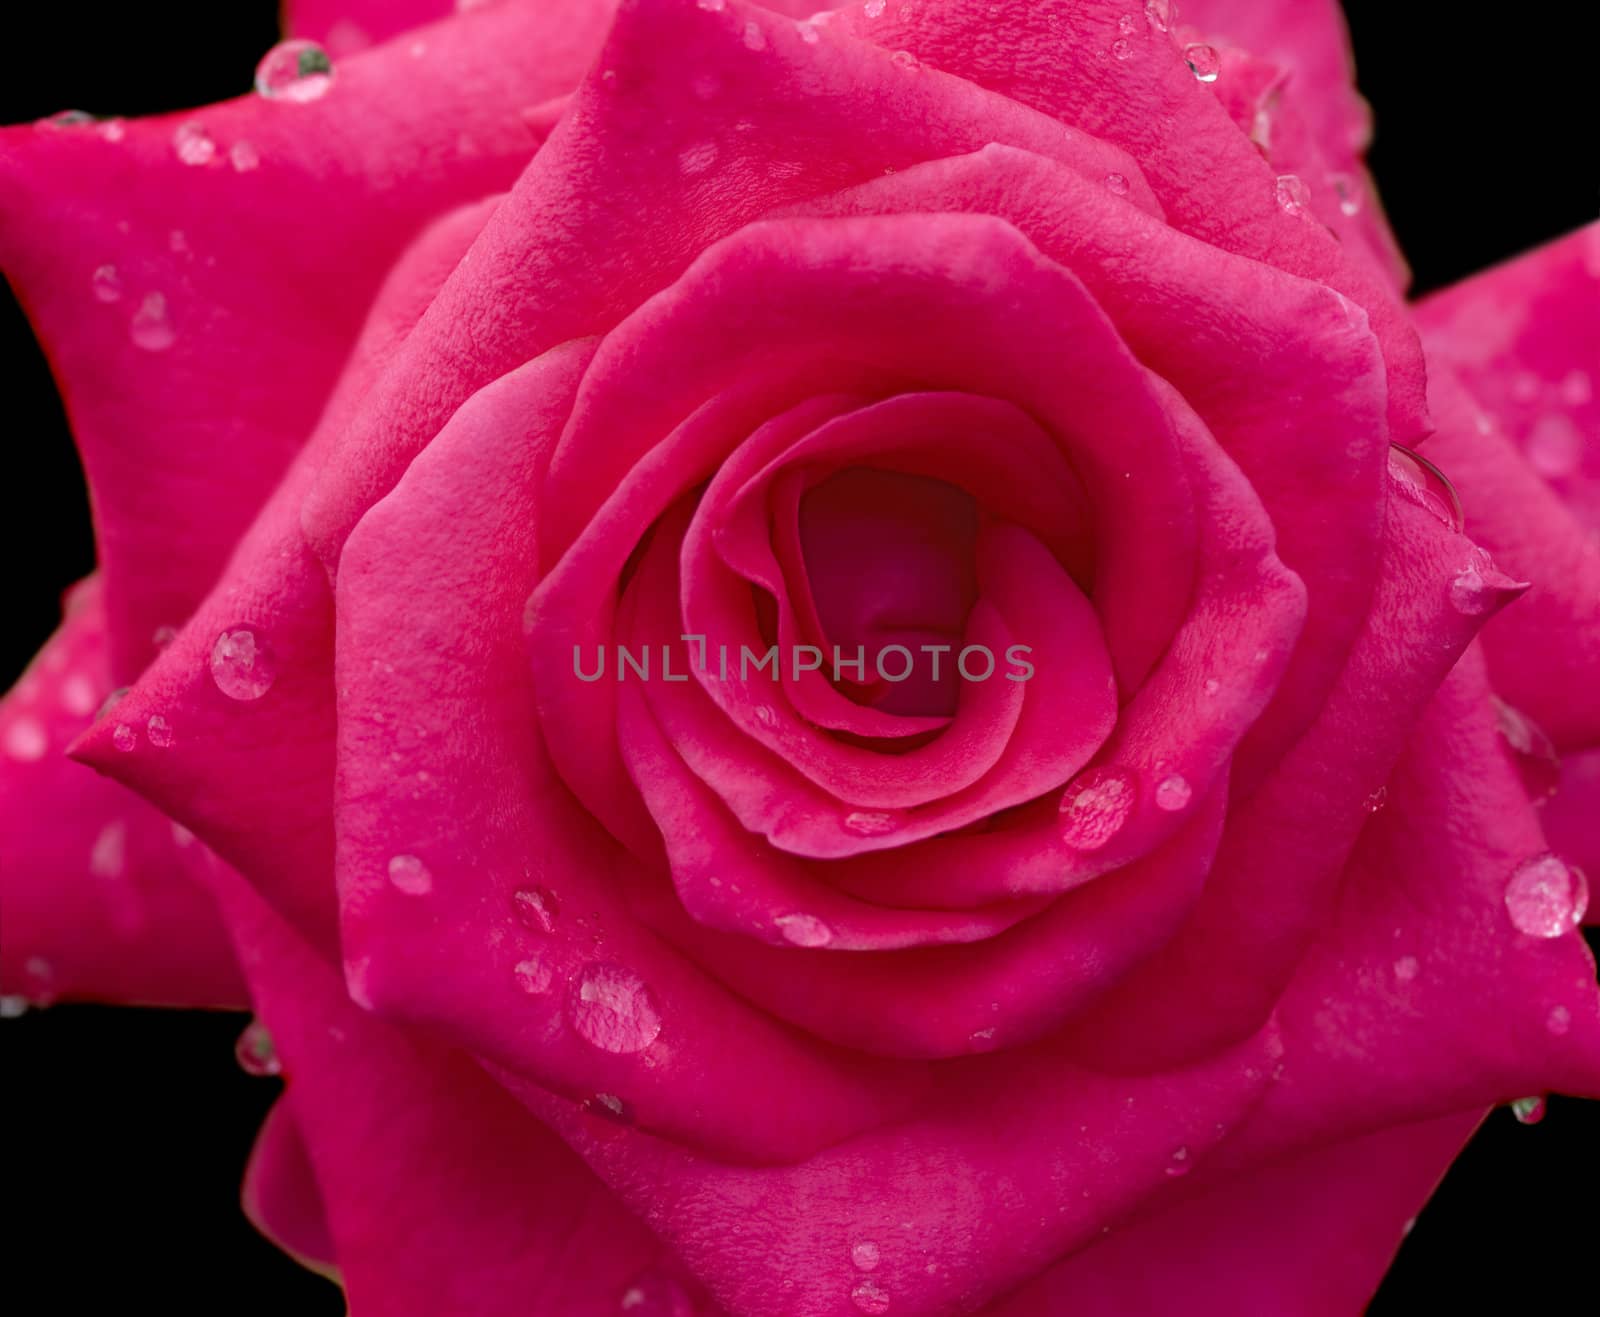 fresh raindrops dew on red rose flower blossom on black